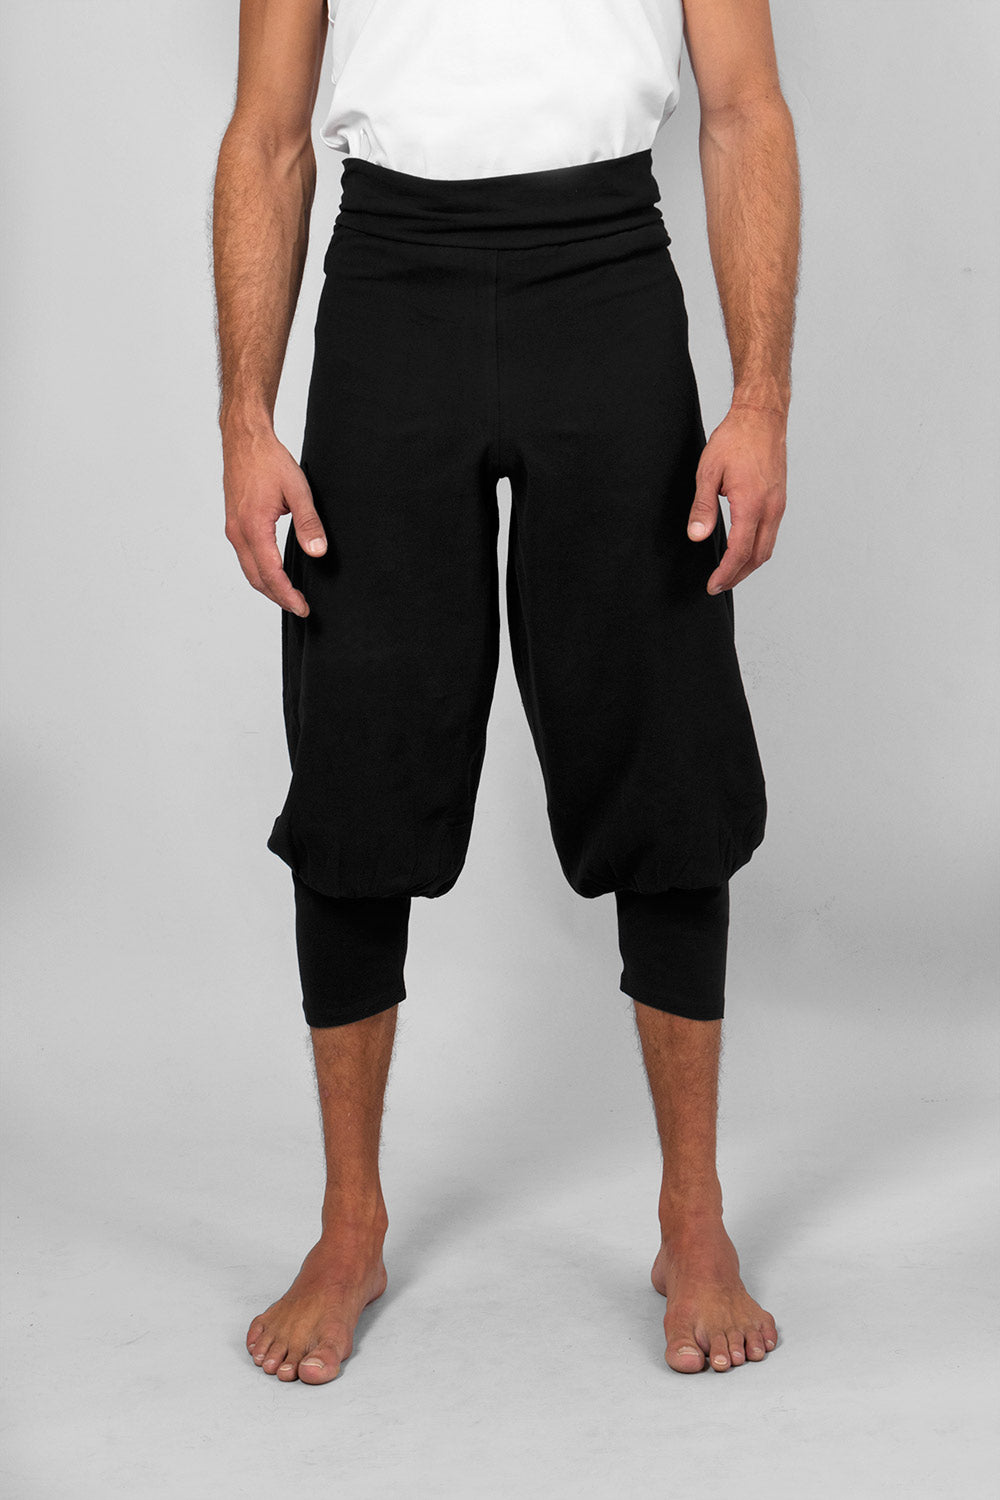 Sadhak men's yoga short - Black